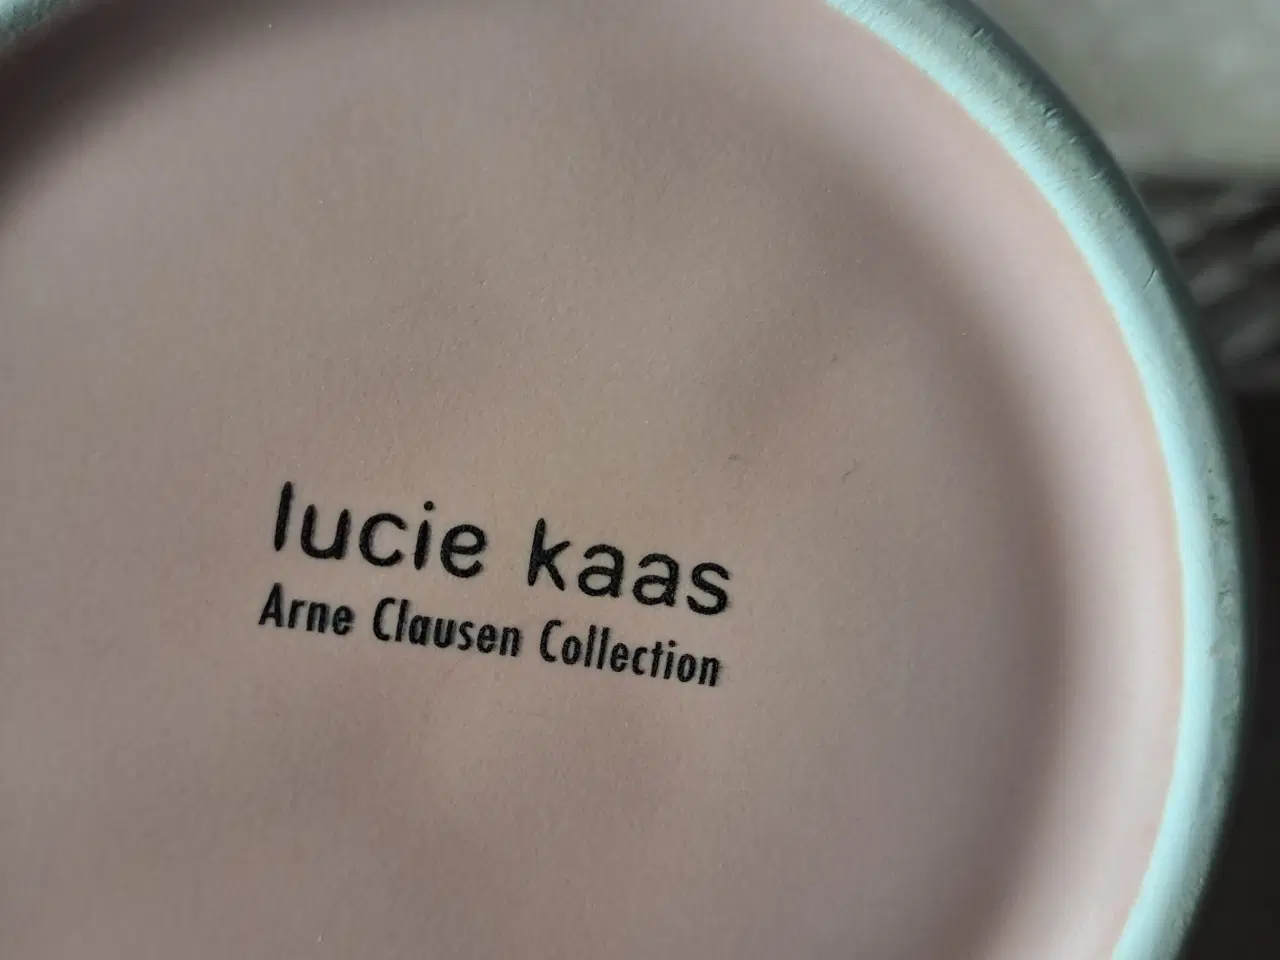 Billede 3 - Arne Clausen, Lucie Kaas (Lotus vase) 